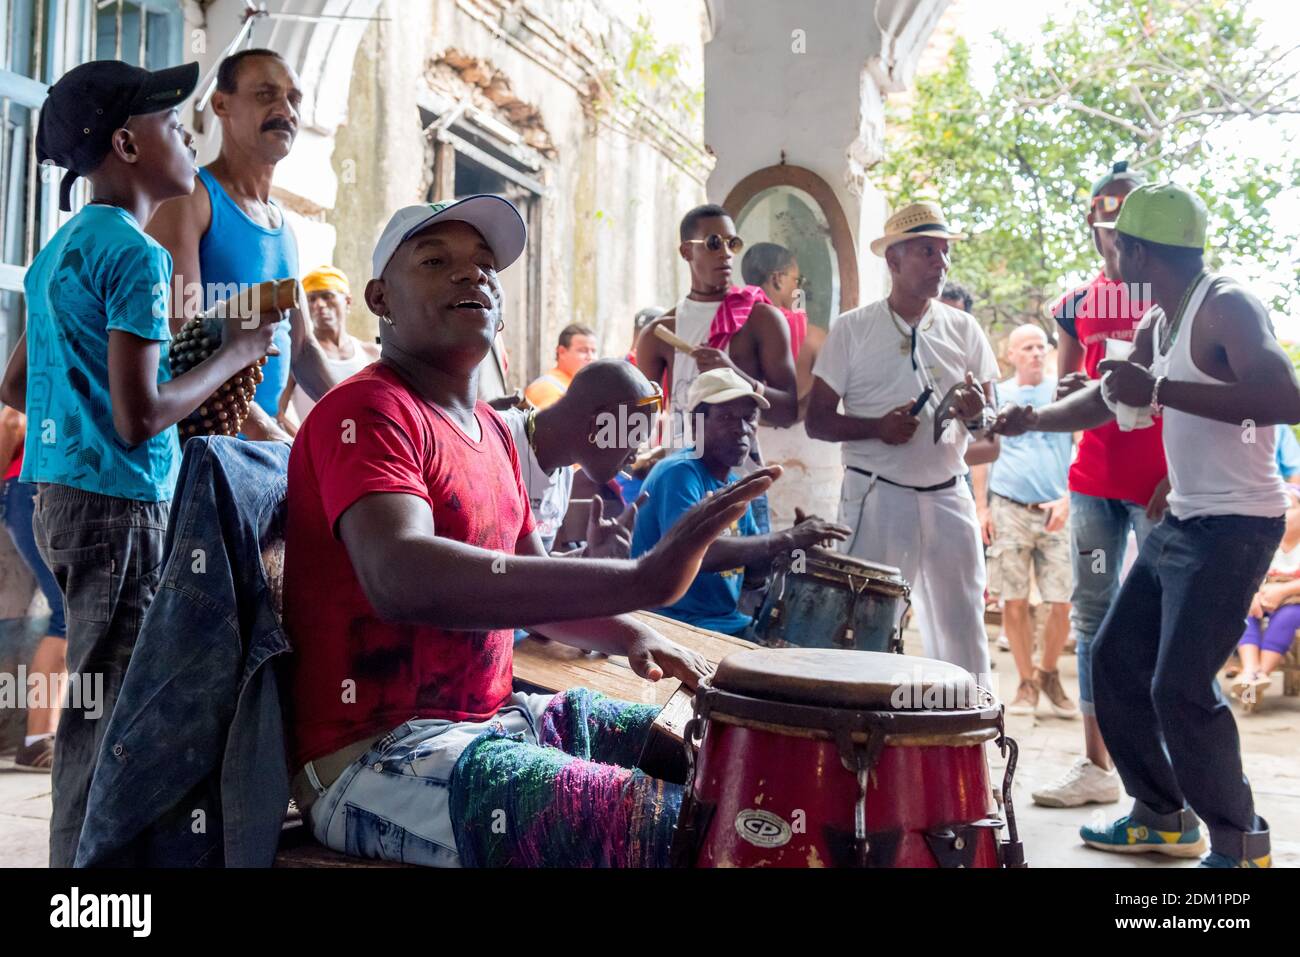 Seguaci di Santeria che batterano e fanno musica a Trinidad, Cuba Foto Stock